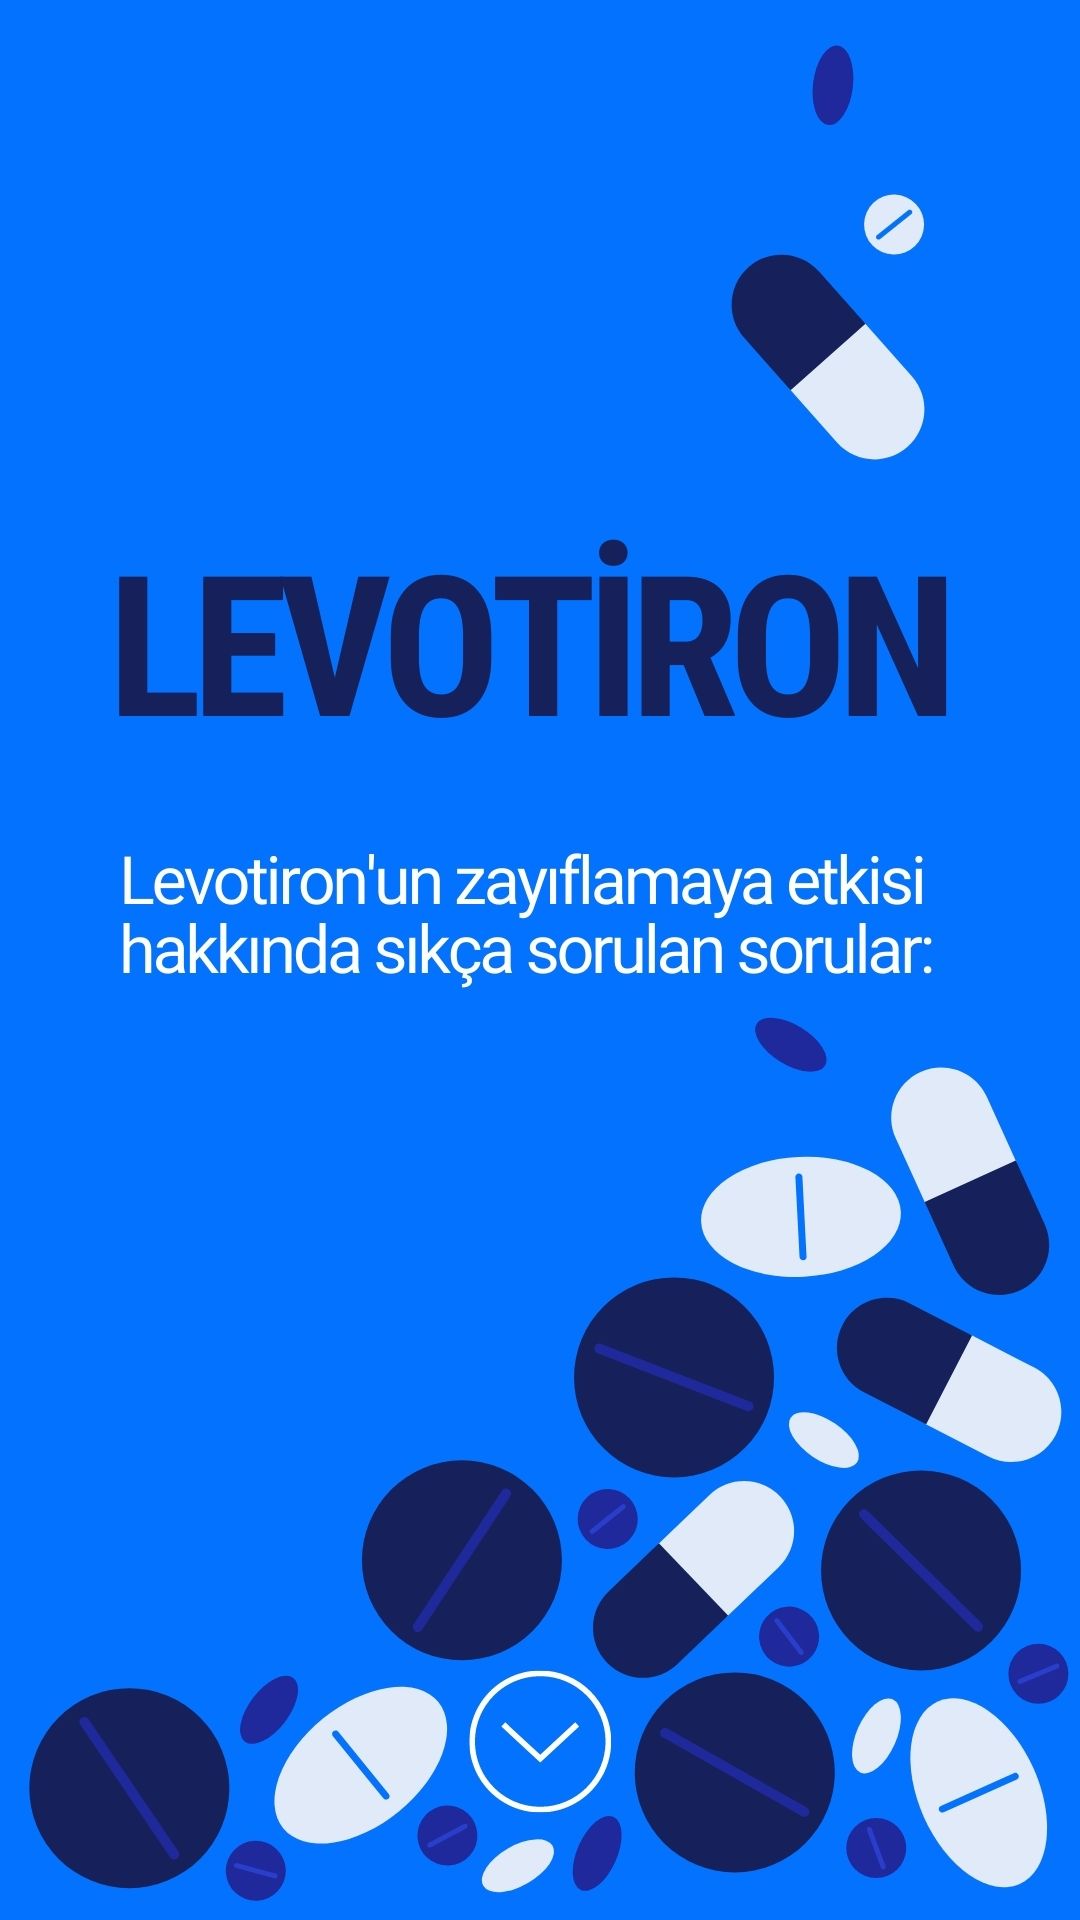 Levotiron hakkında sorulanlar